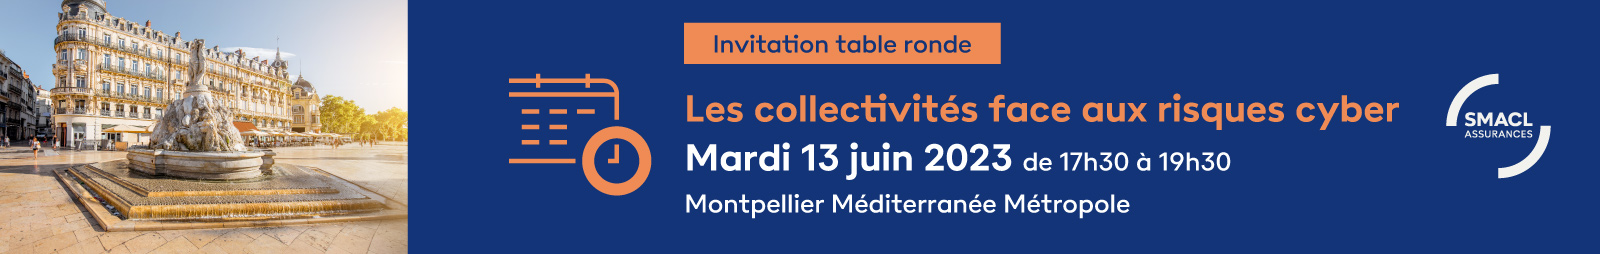 Inscriptions réunion régionale de Montpellier, 13 juin - SMACL Assurances